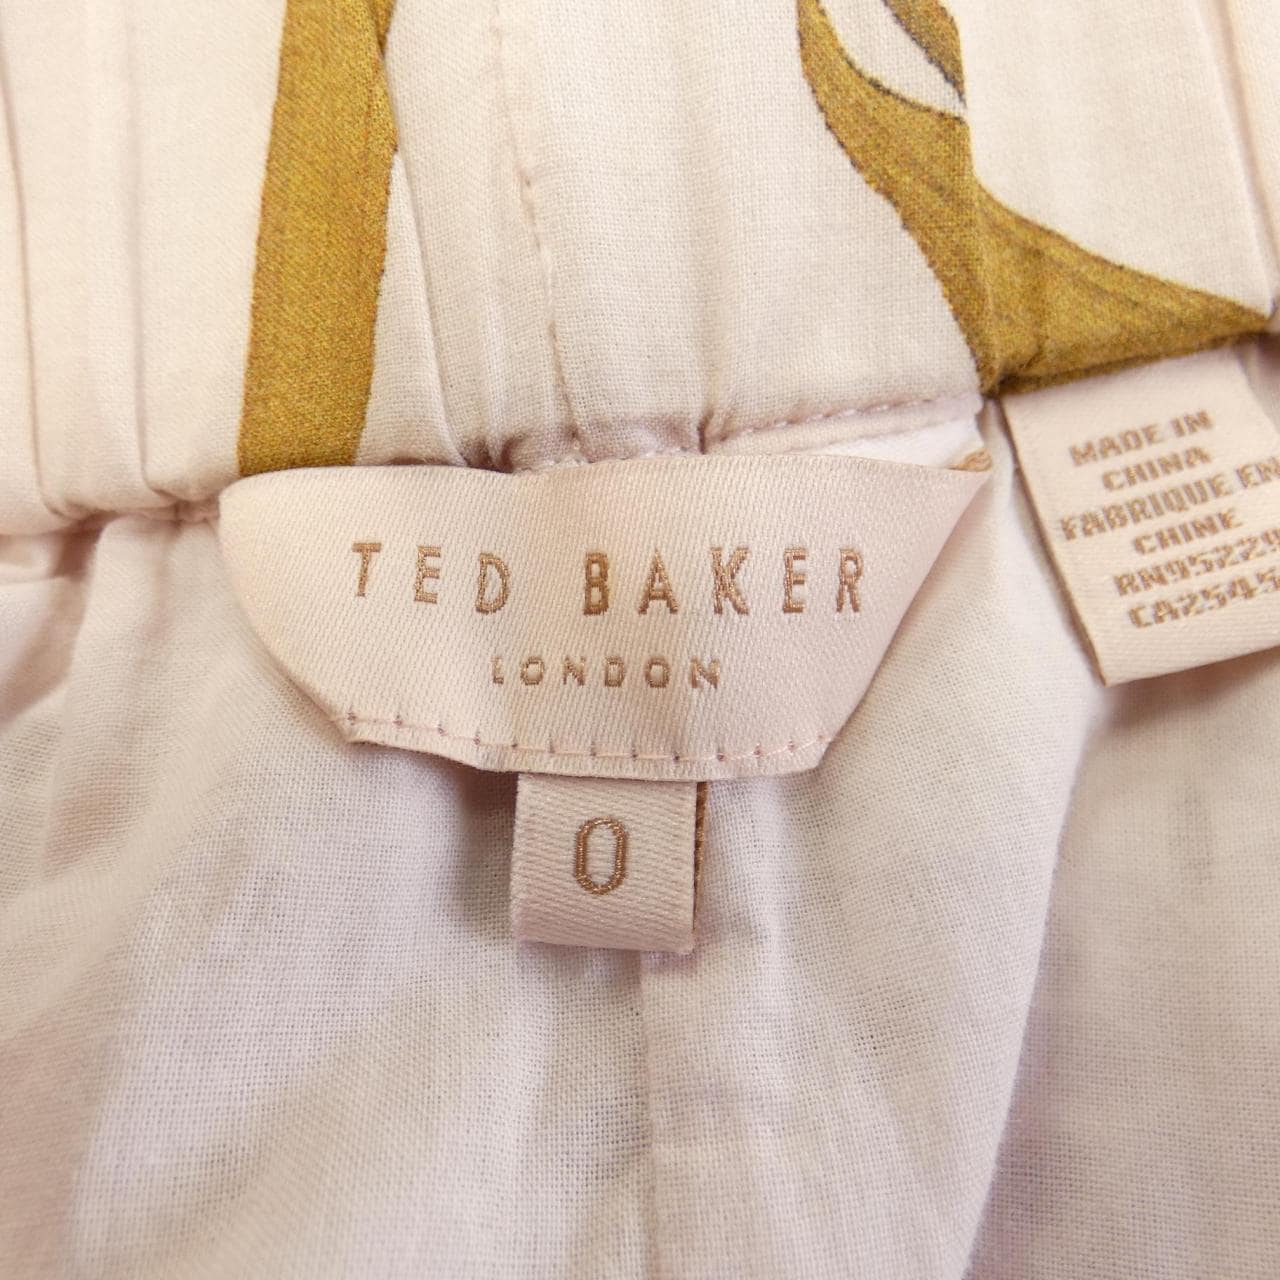 泰德貝克TED BAKER設置